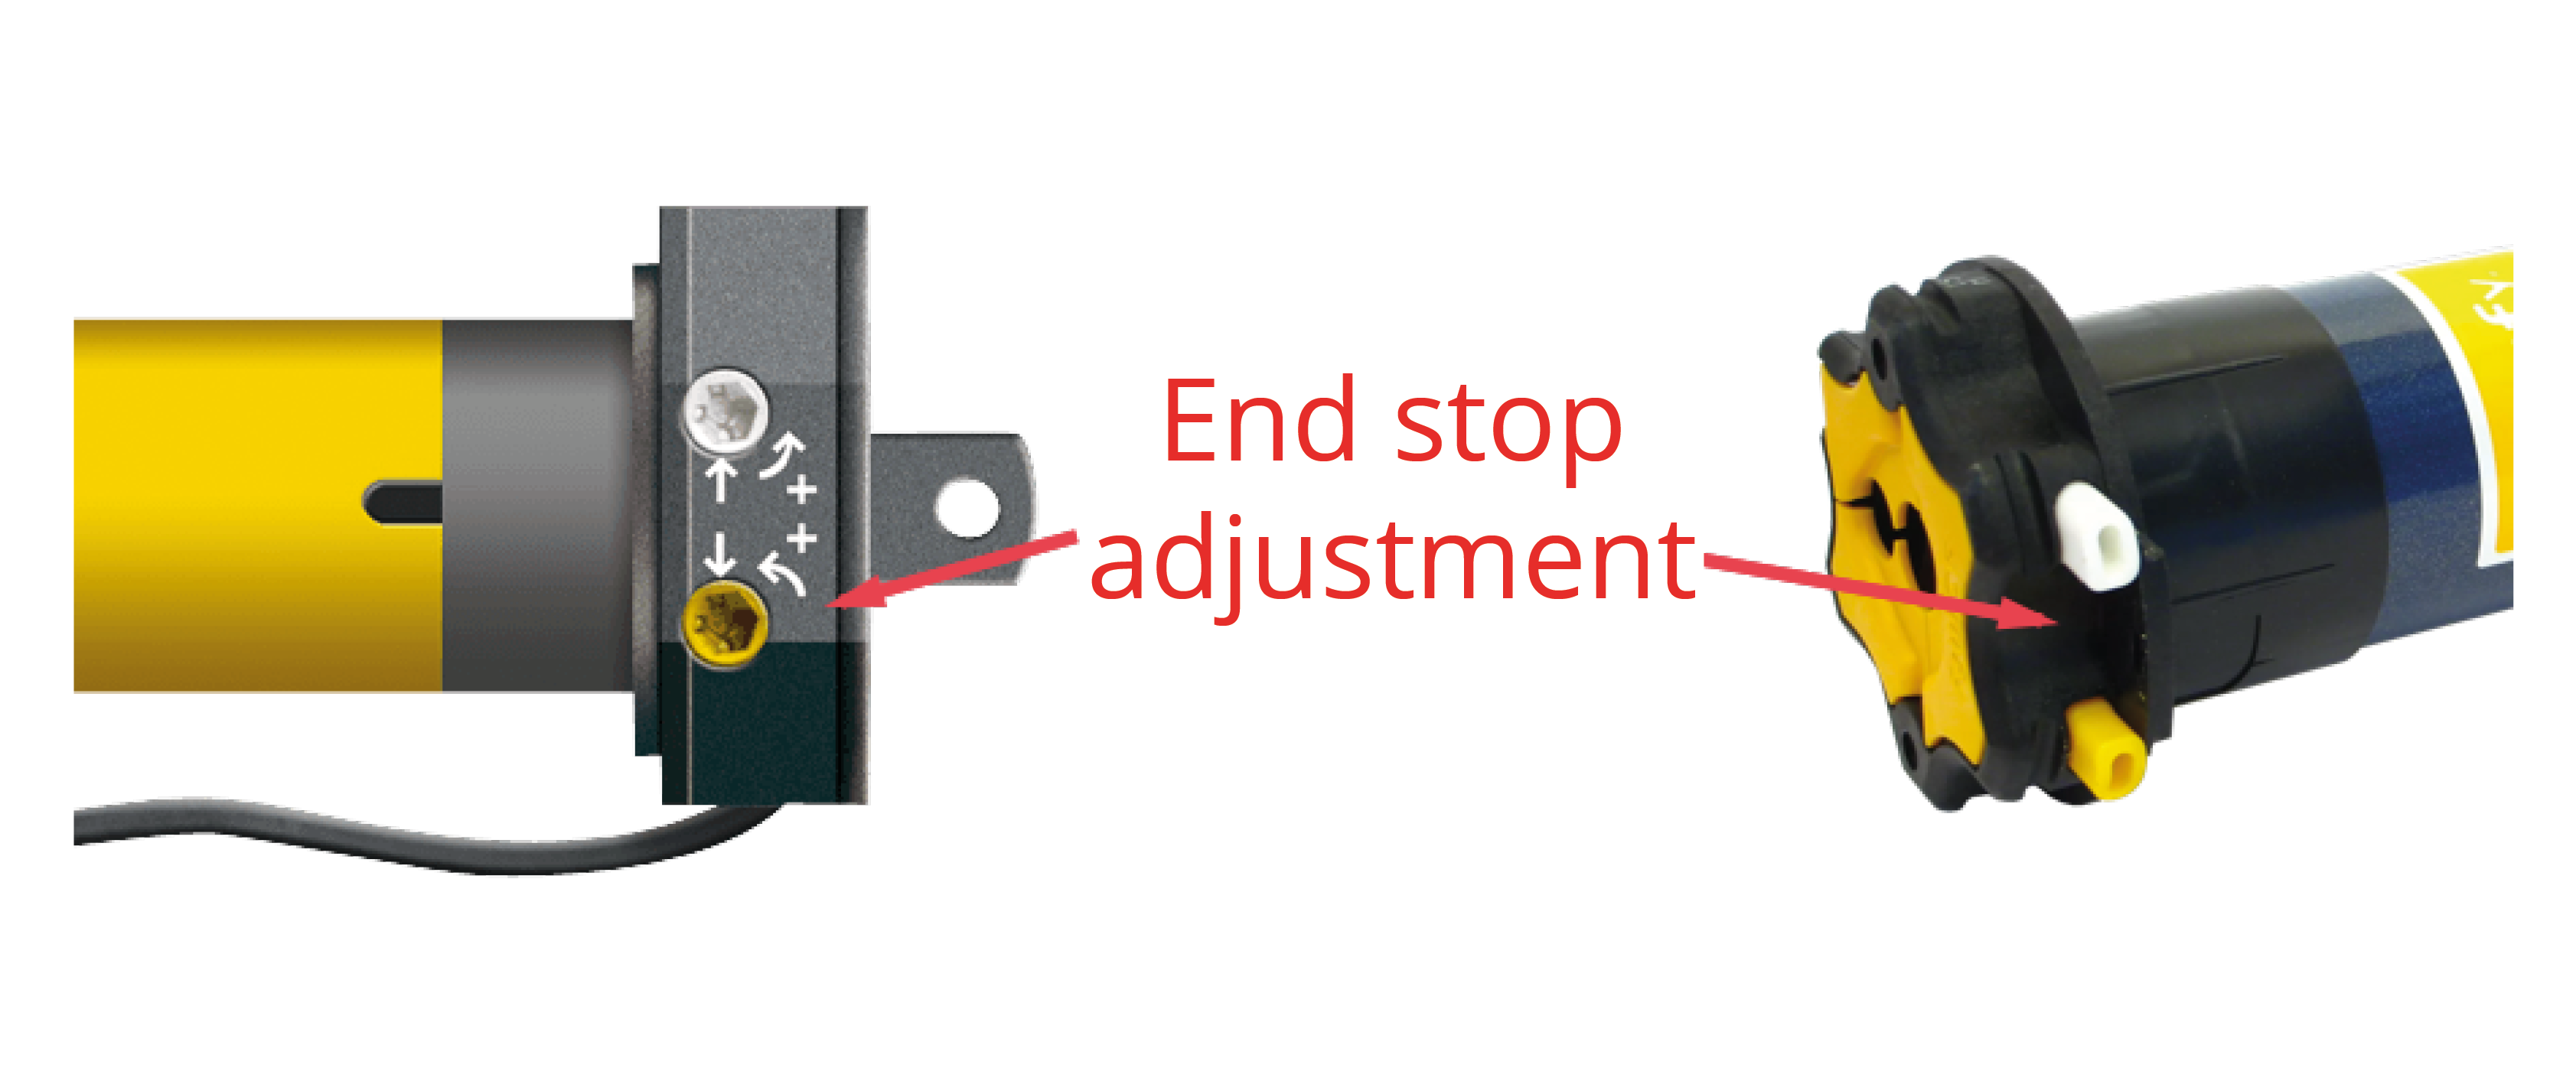 End_stop_adjustment.png